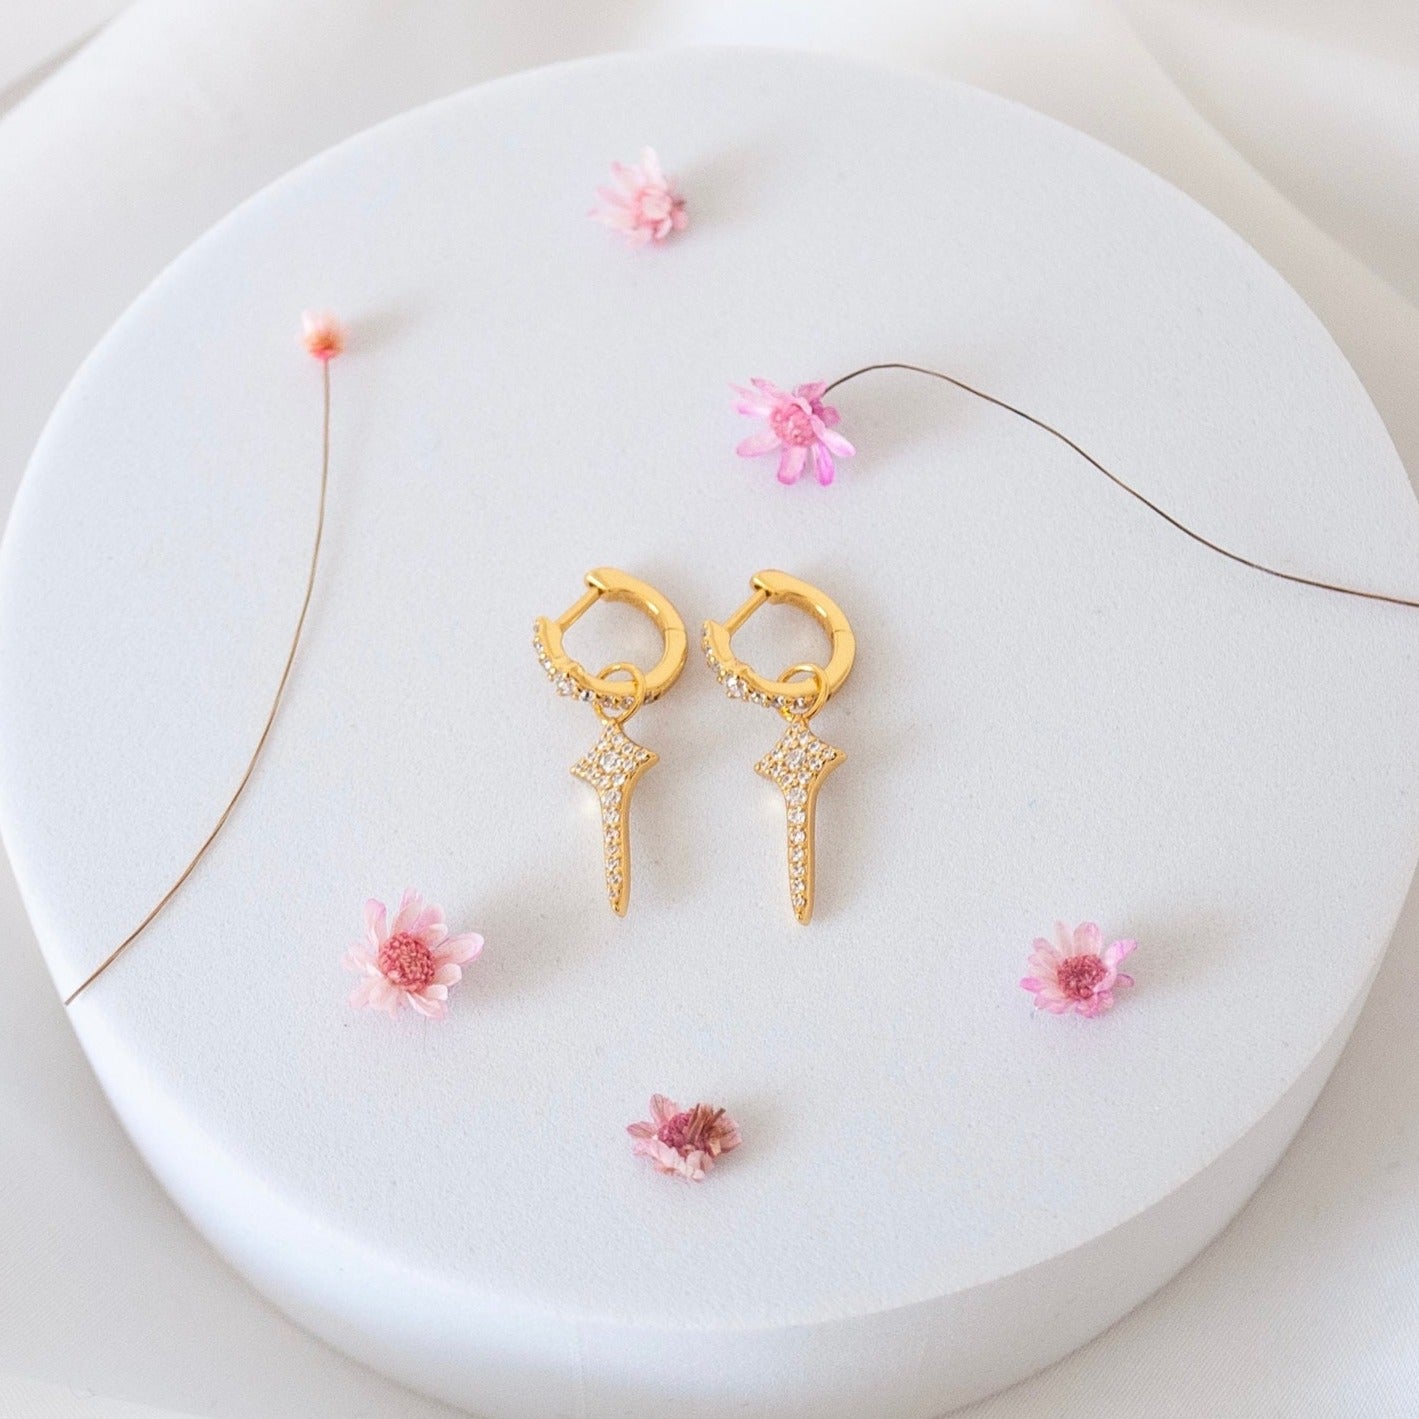 Aspen earrings - gold plated